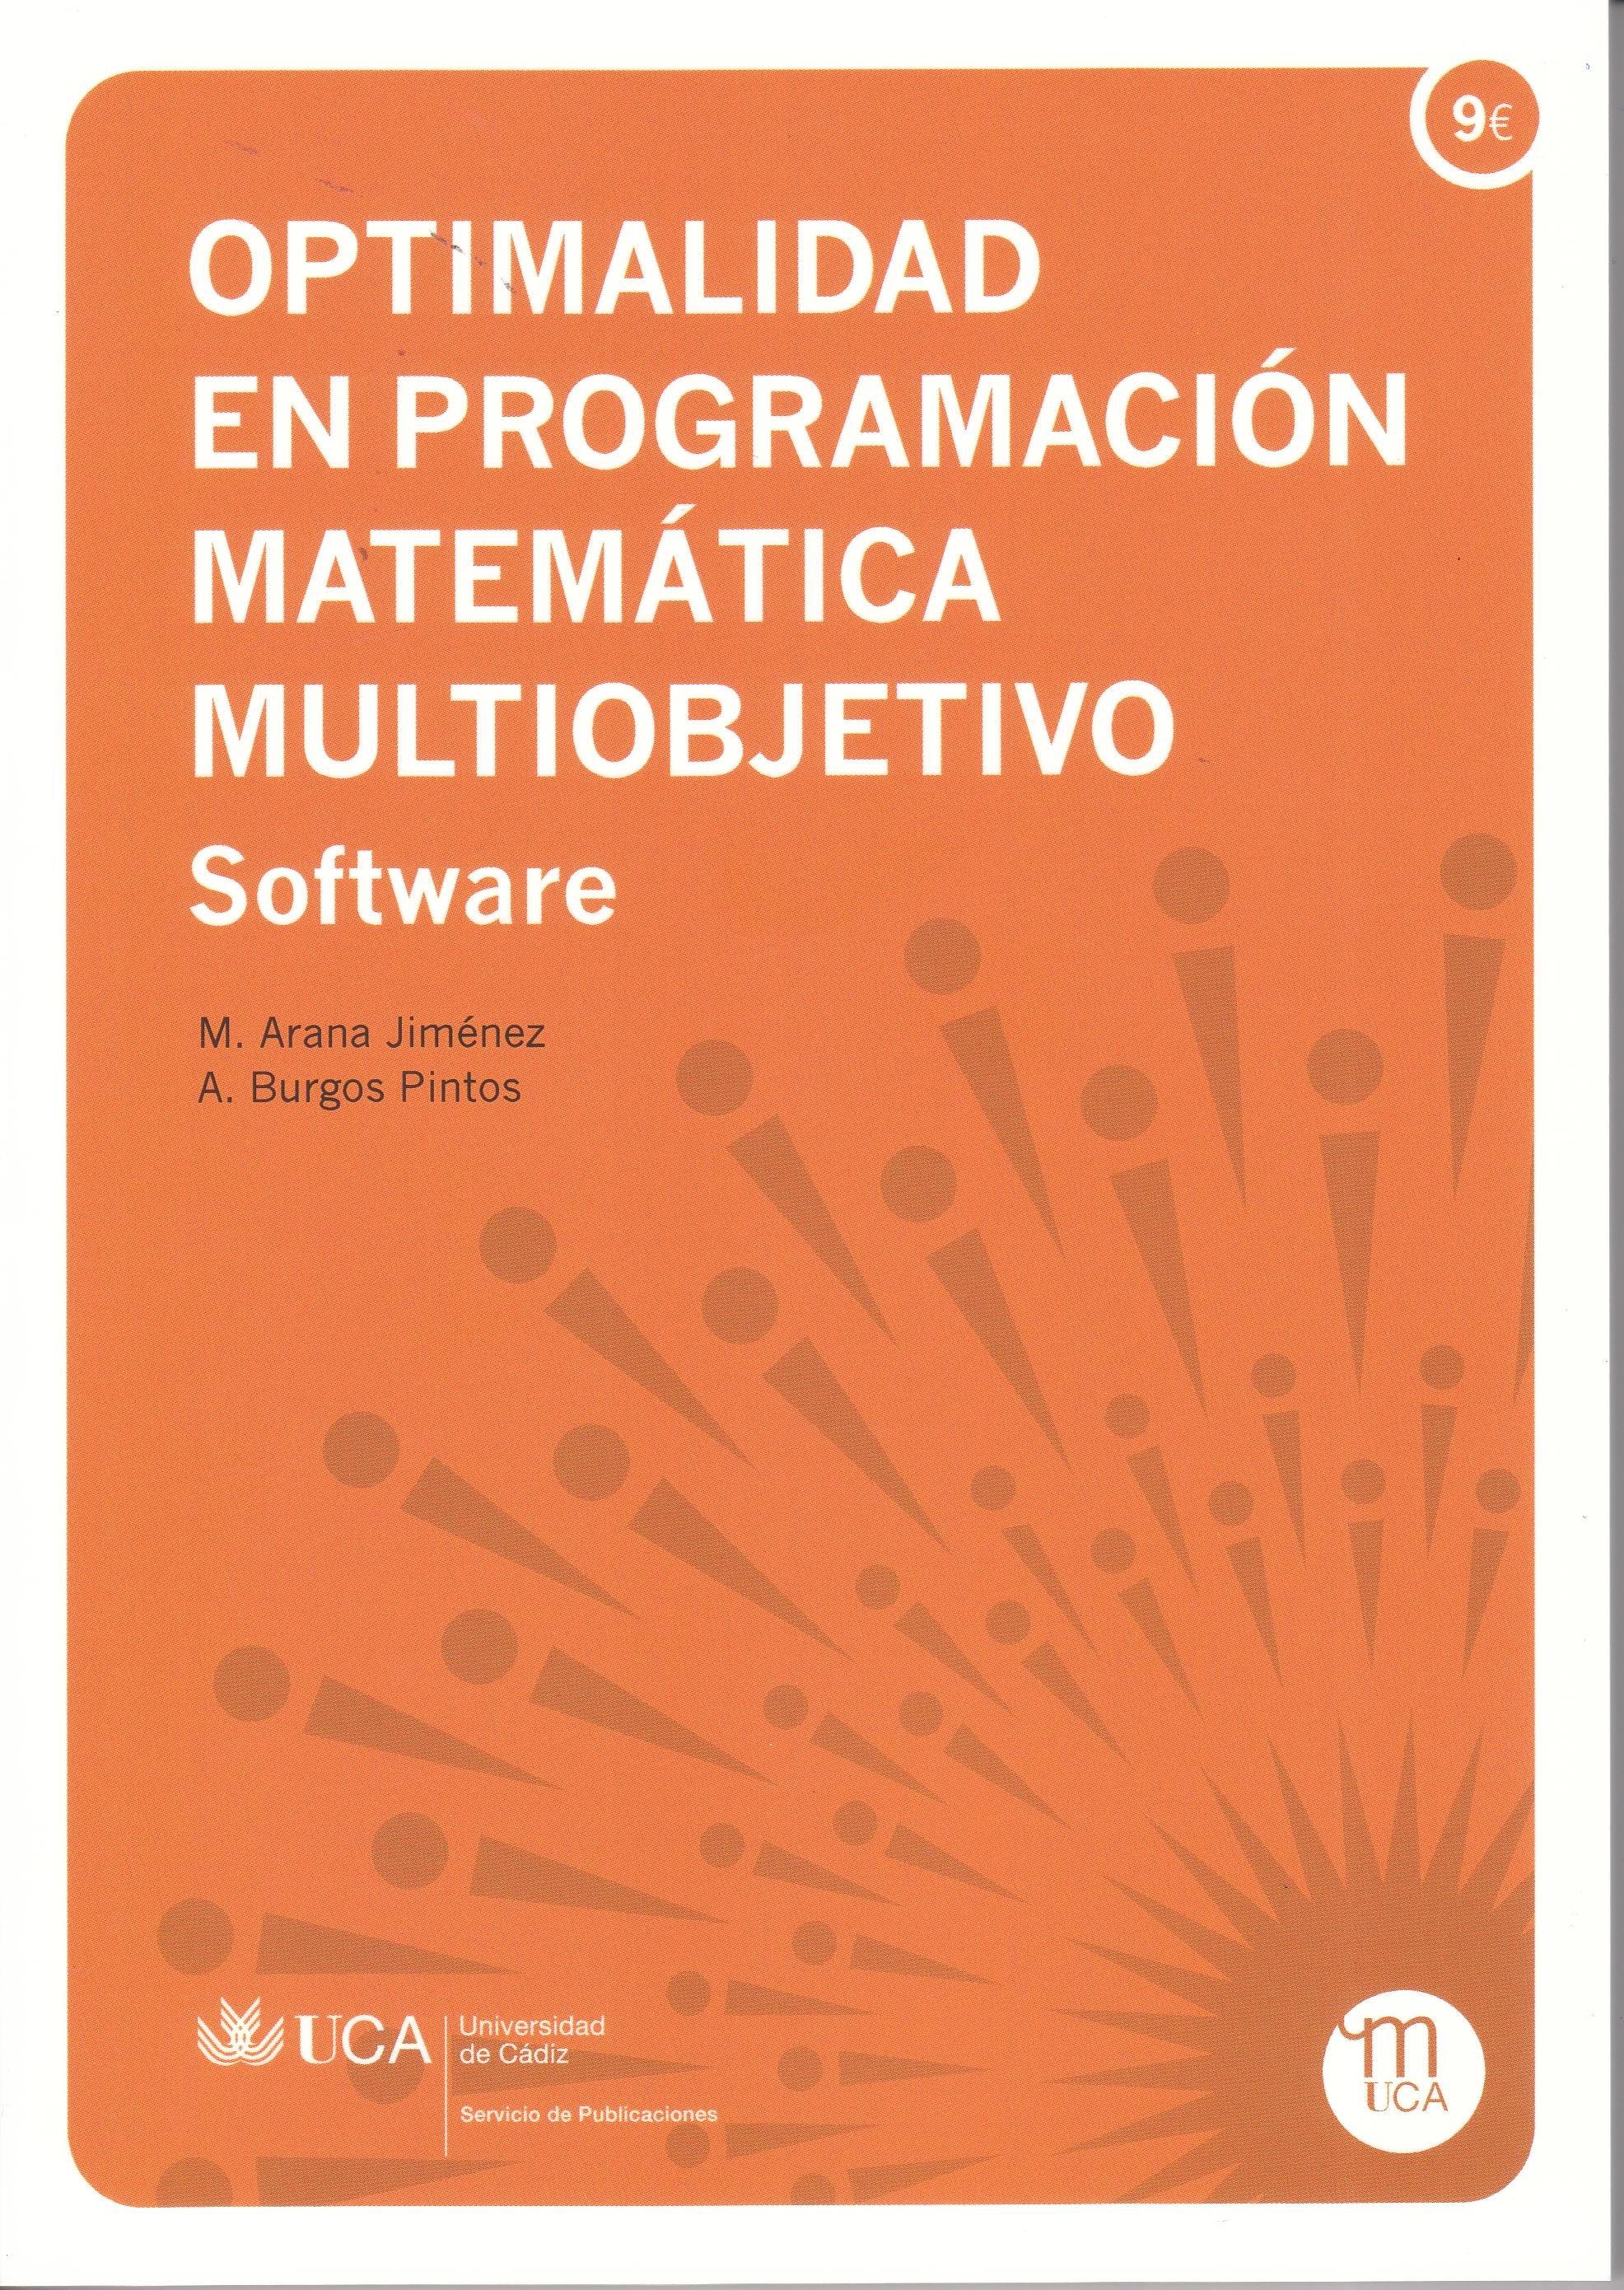 Optimalidad en programación matemática multiobjetivo "Software"